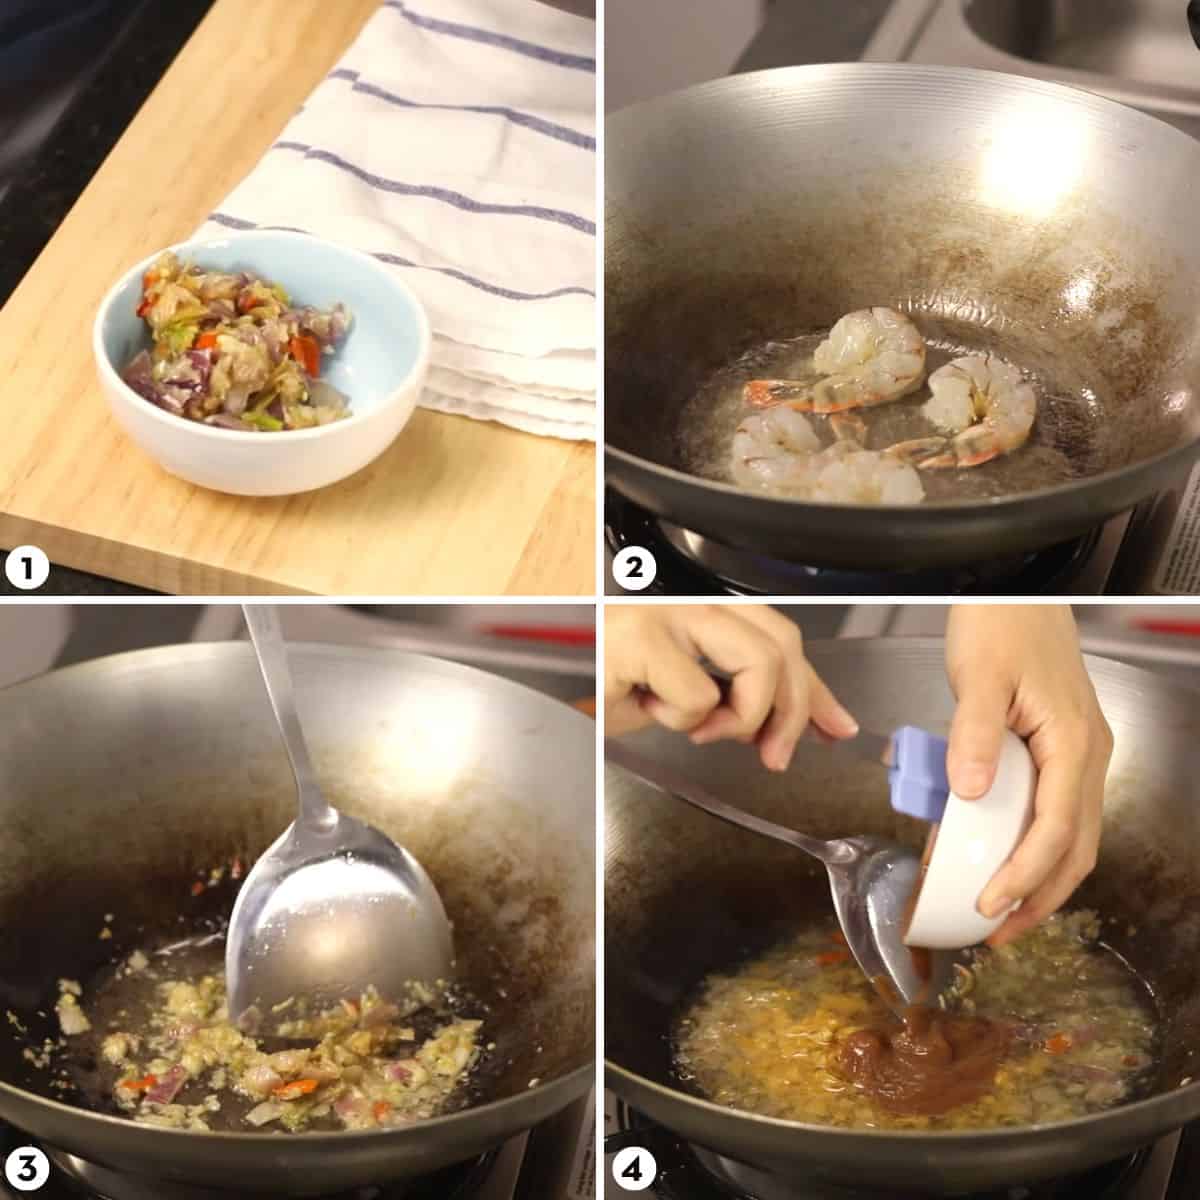 Process shots for making tamarind shrimp steps 1-4